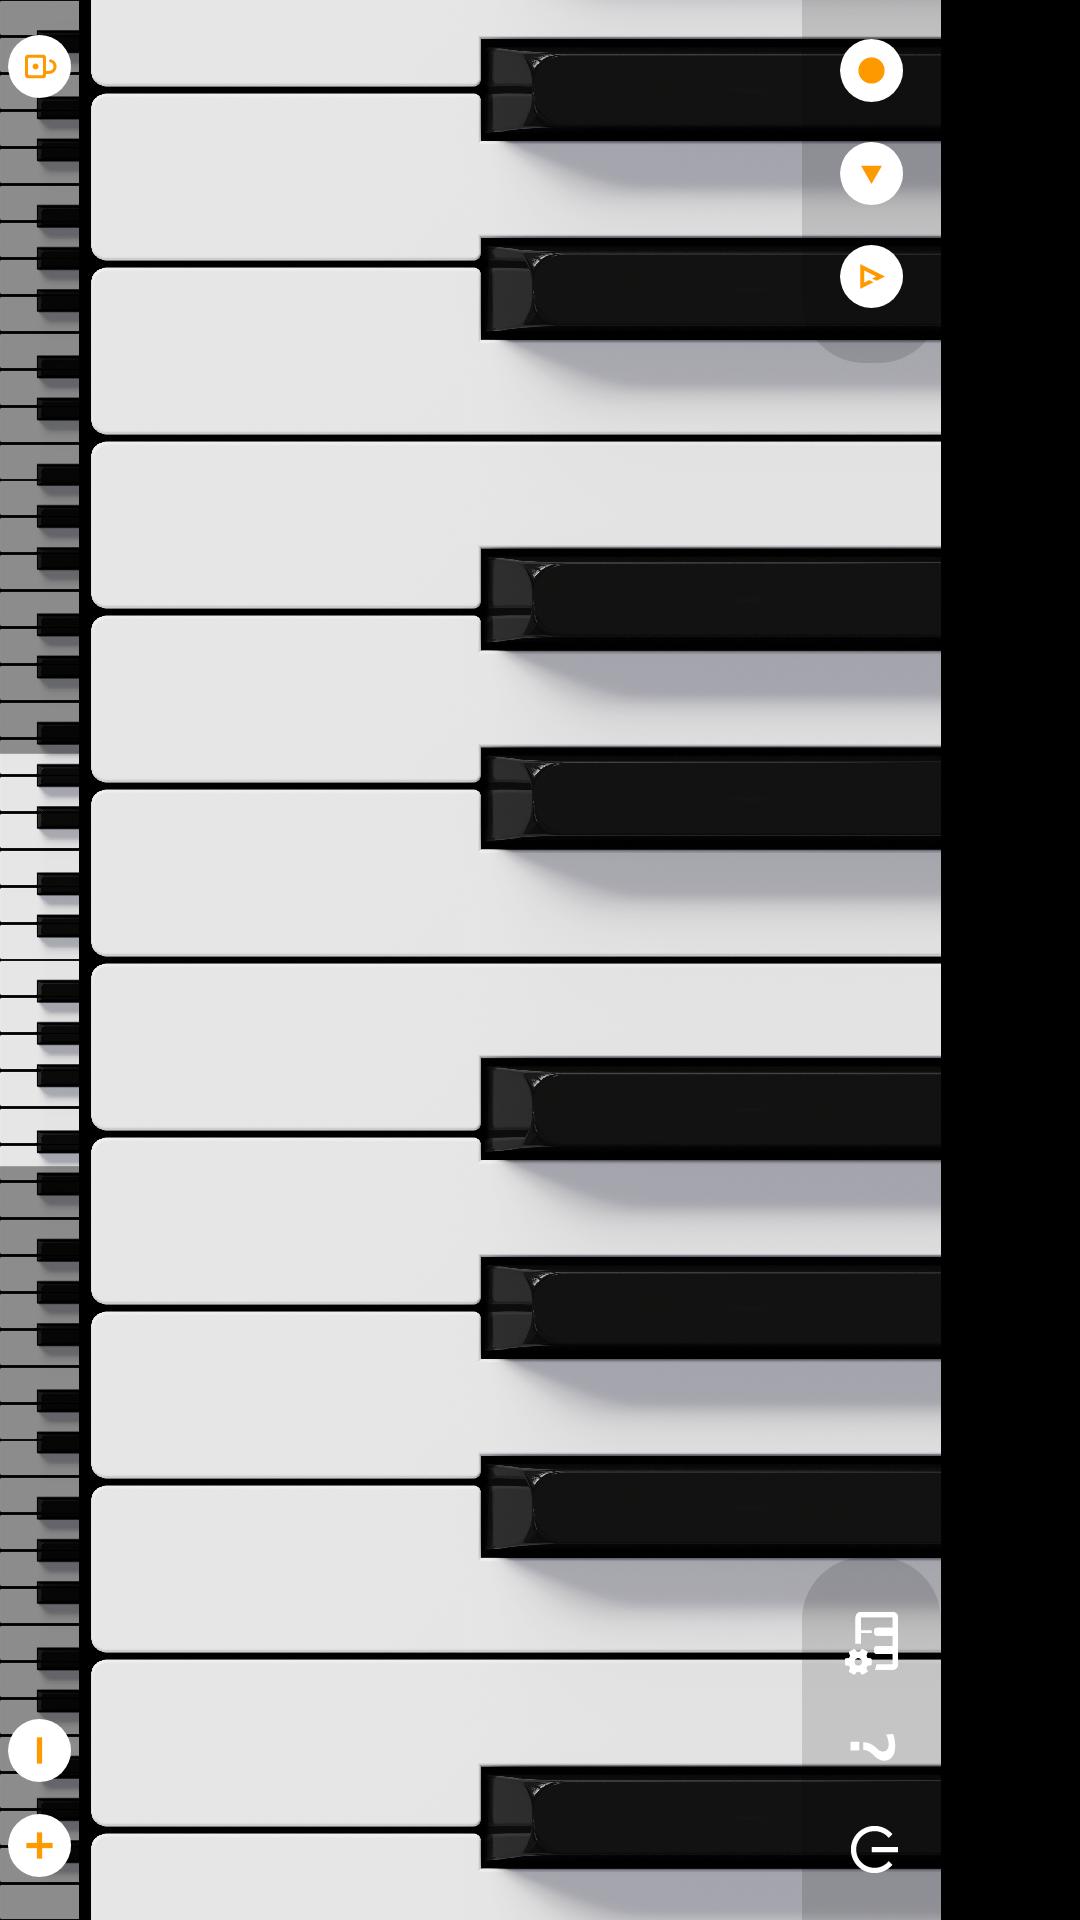 轻音钢琴截图3